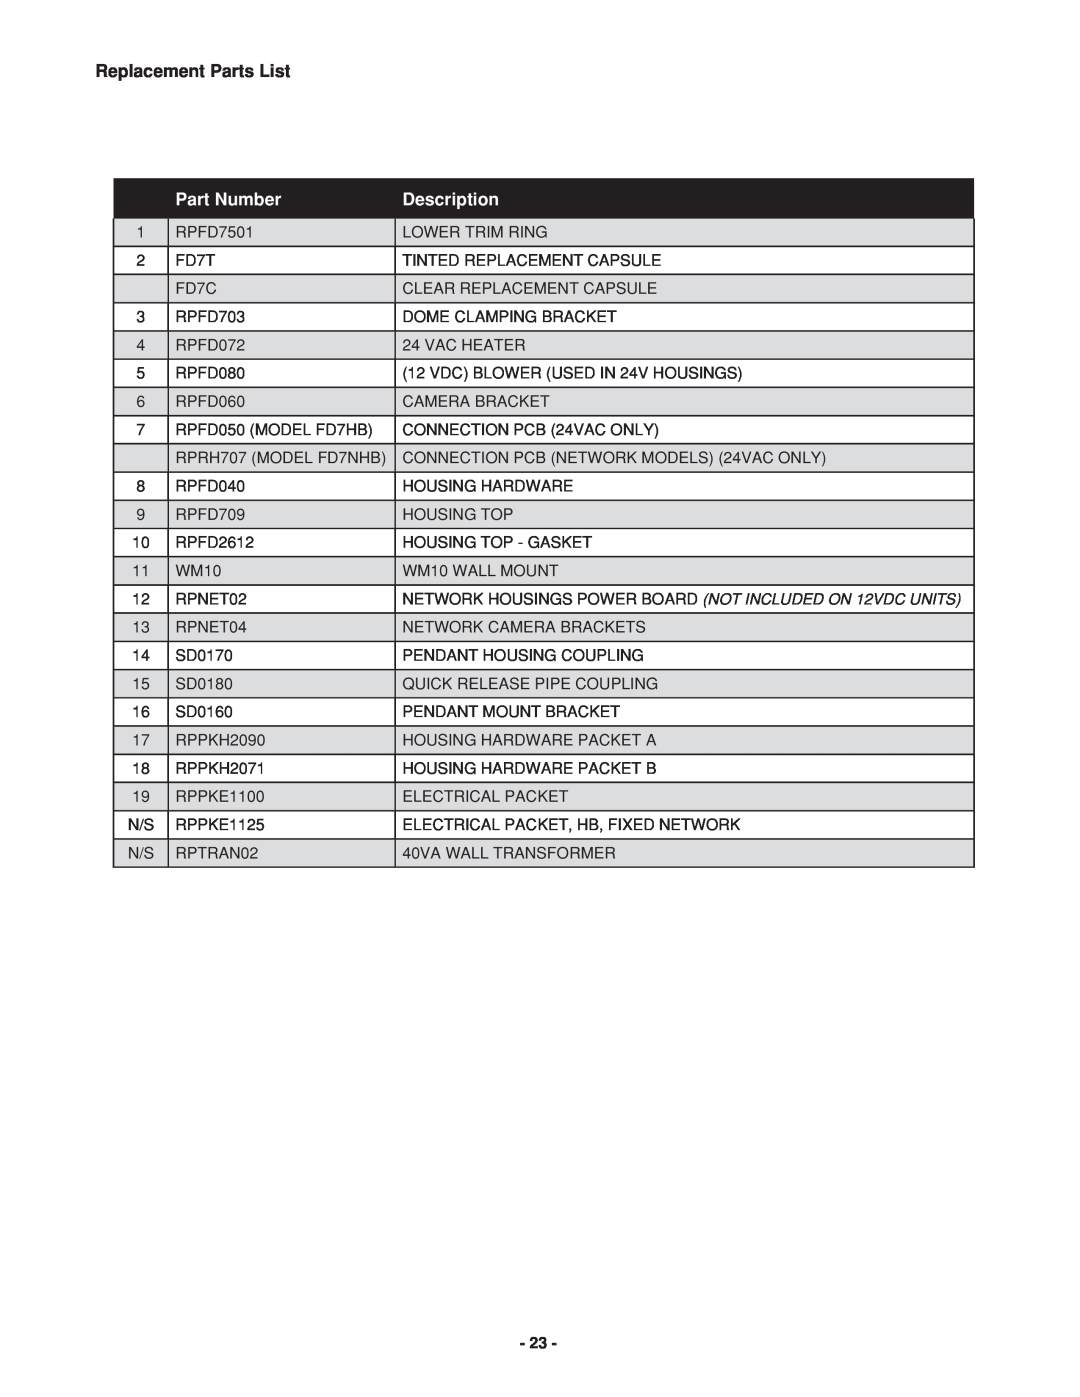 Canon FDP75C12N, FDW75C12N manual Replacement Parts List, Part Number, Description 